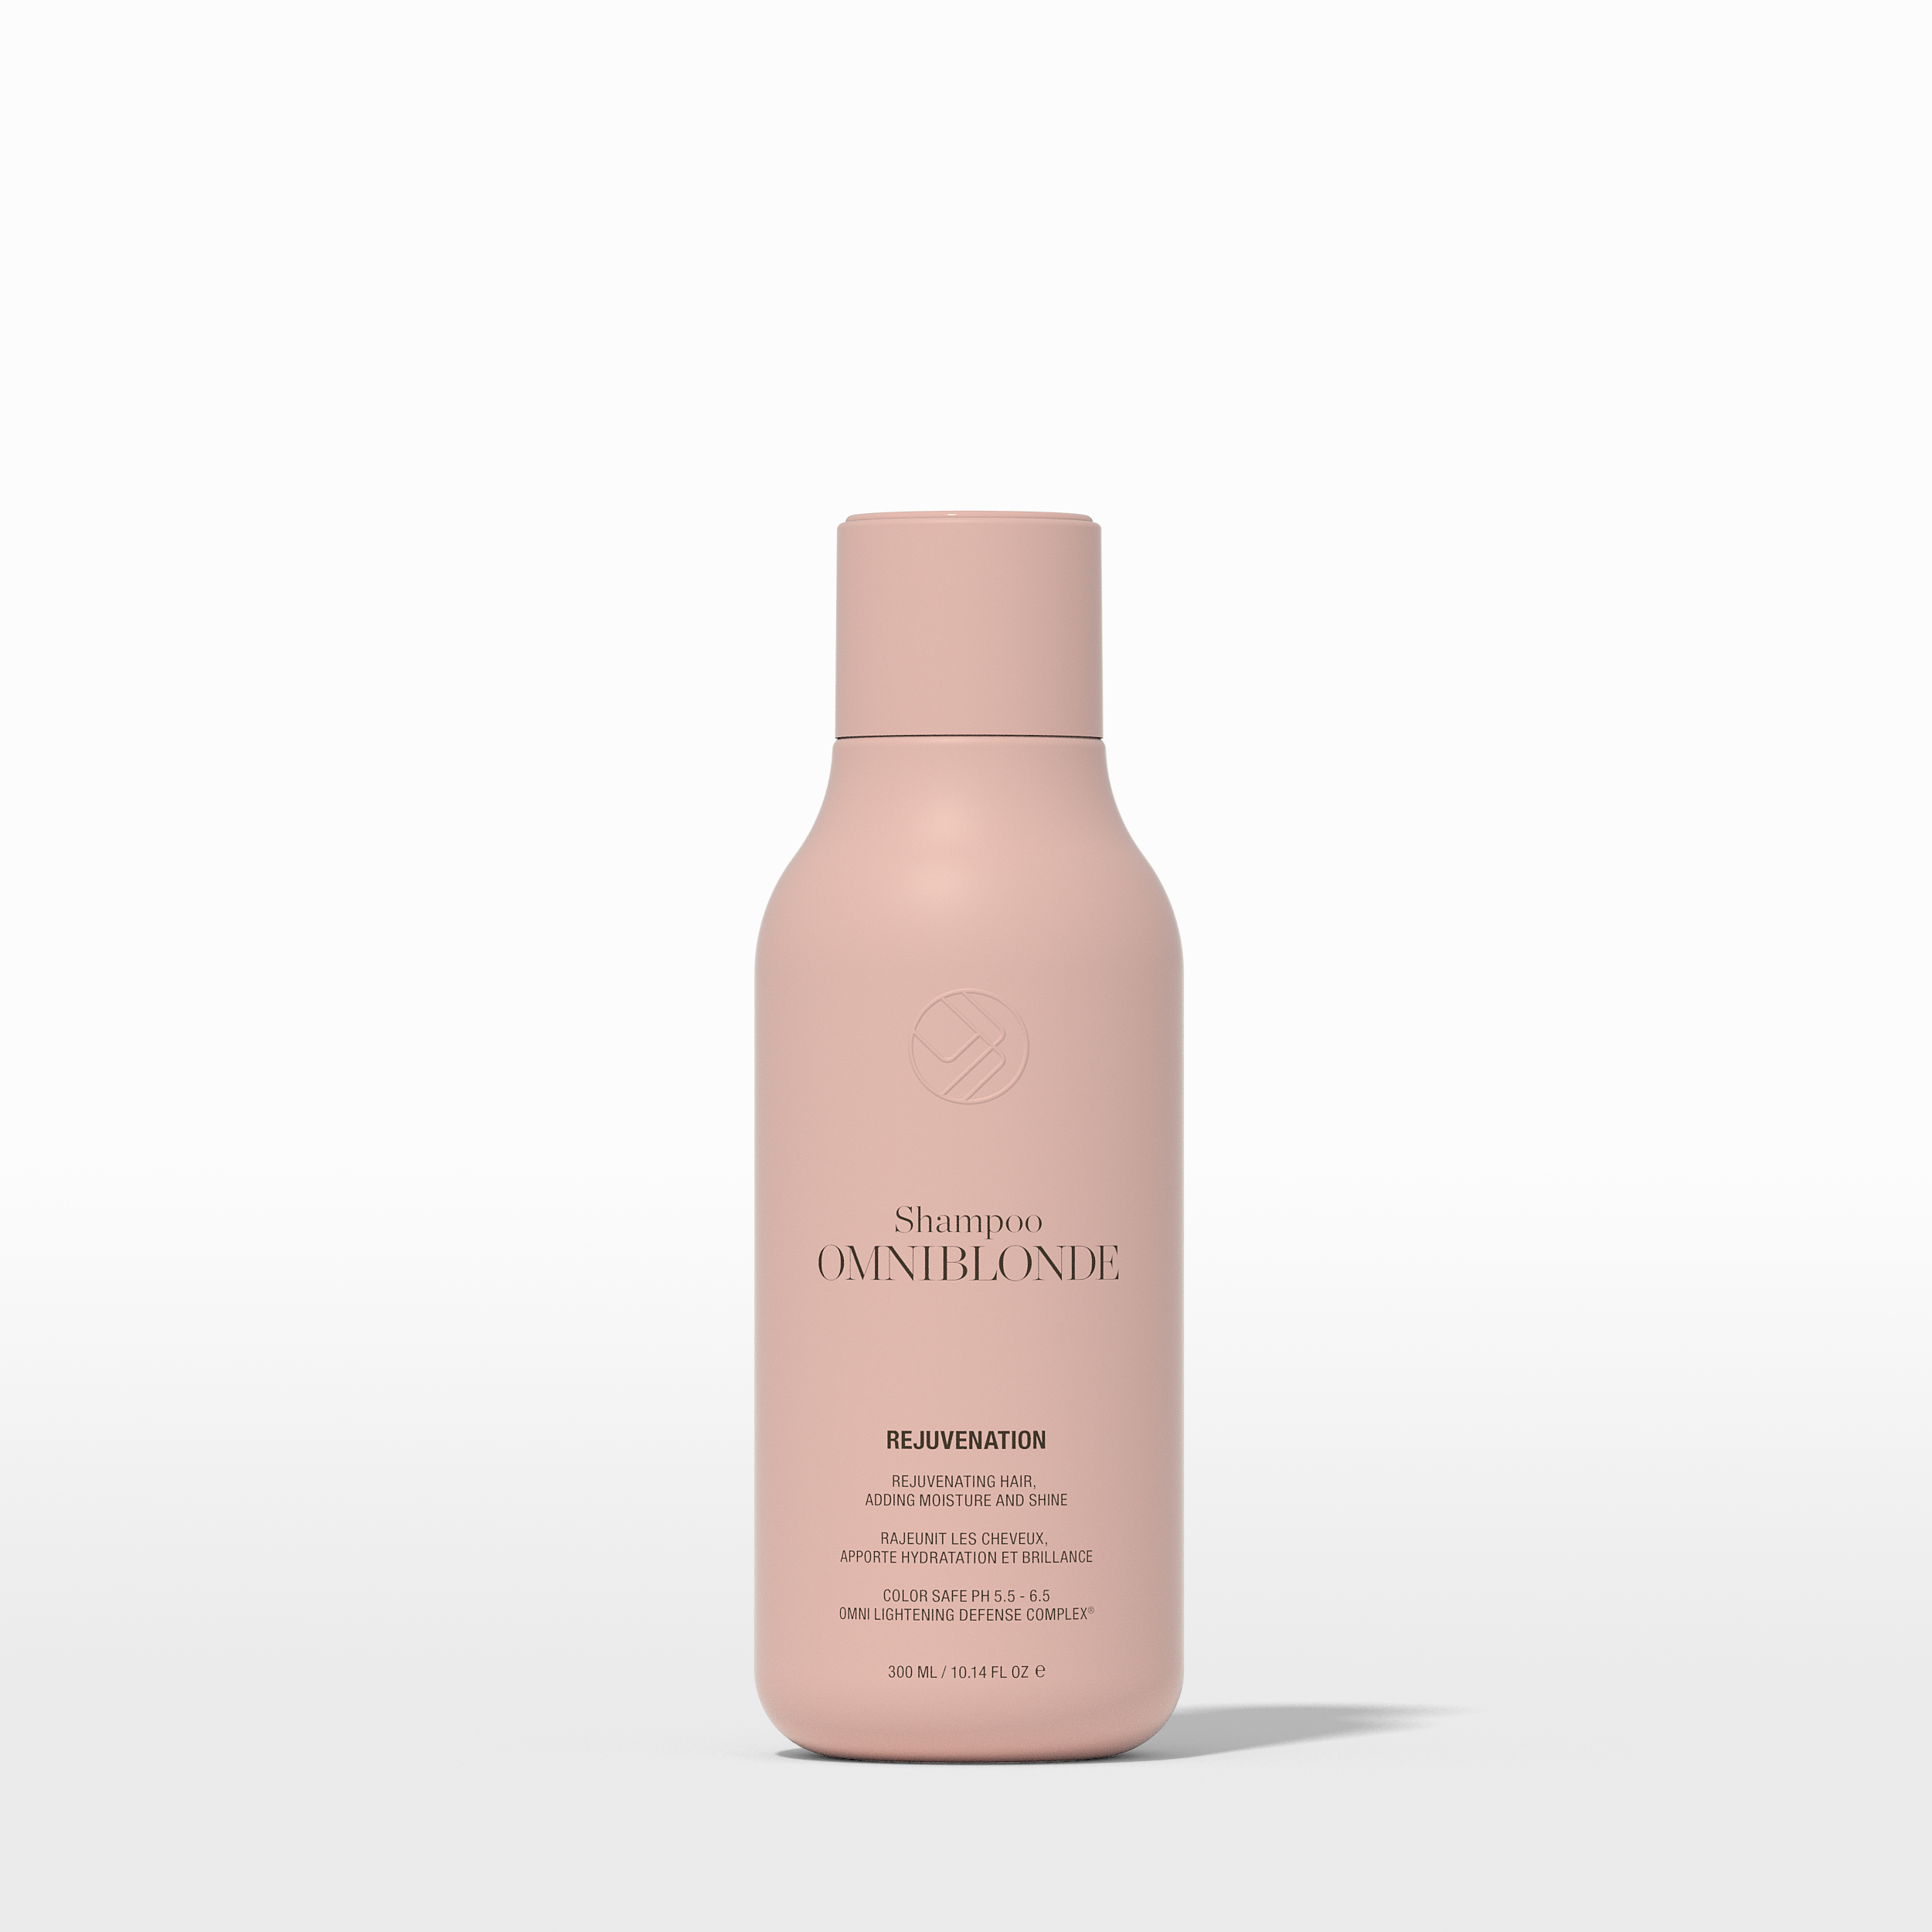 OB_WEB_PROD_Rejuvenation-shampoo_300